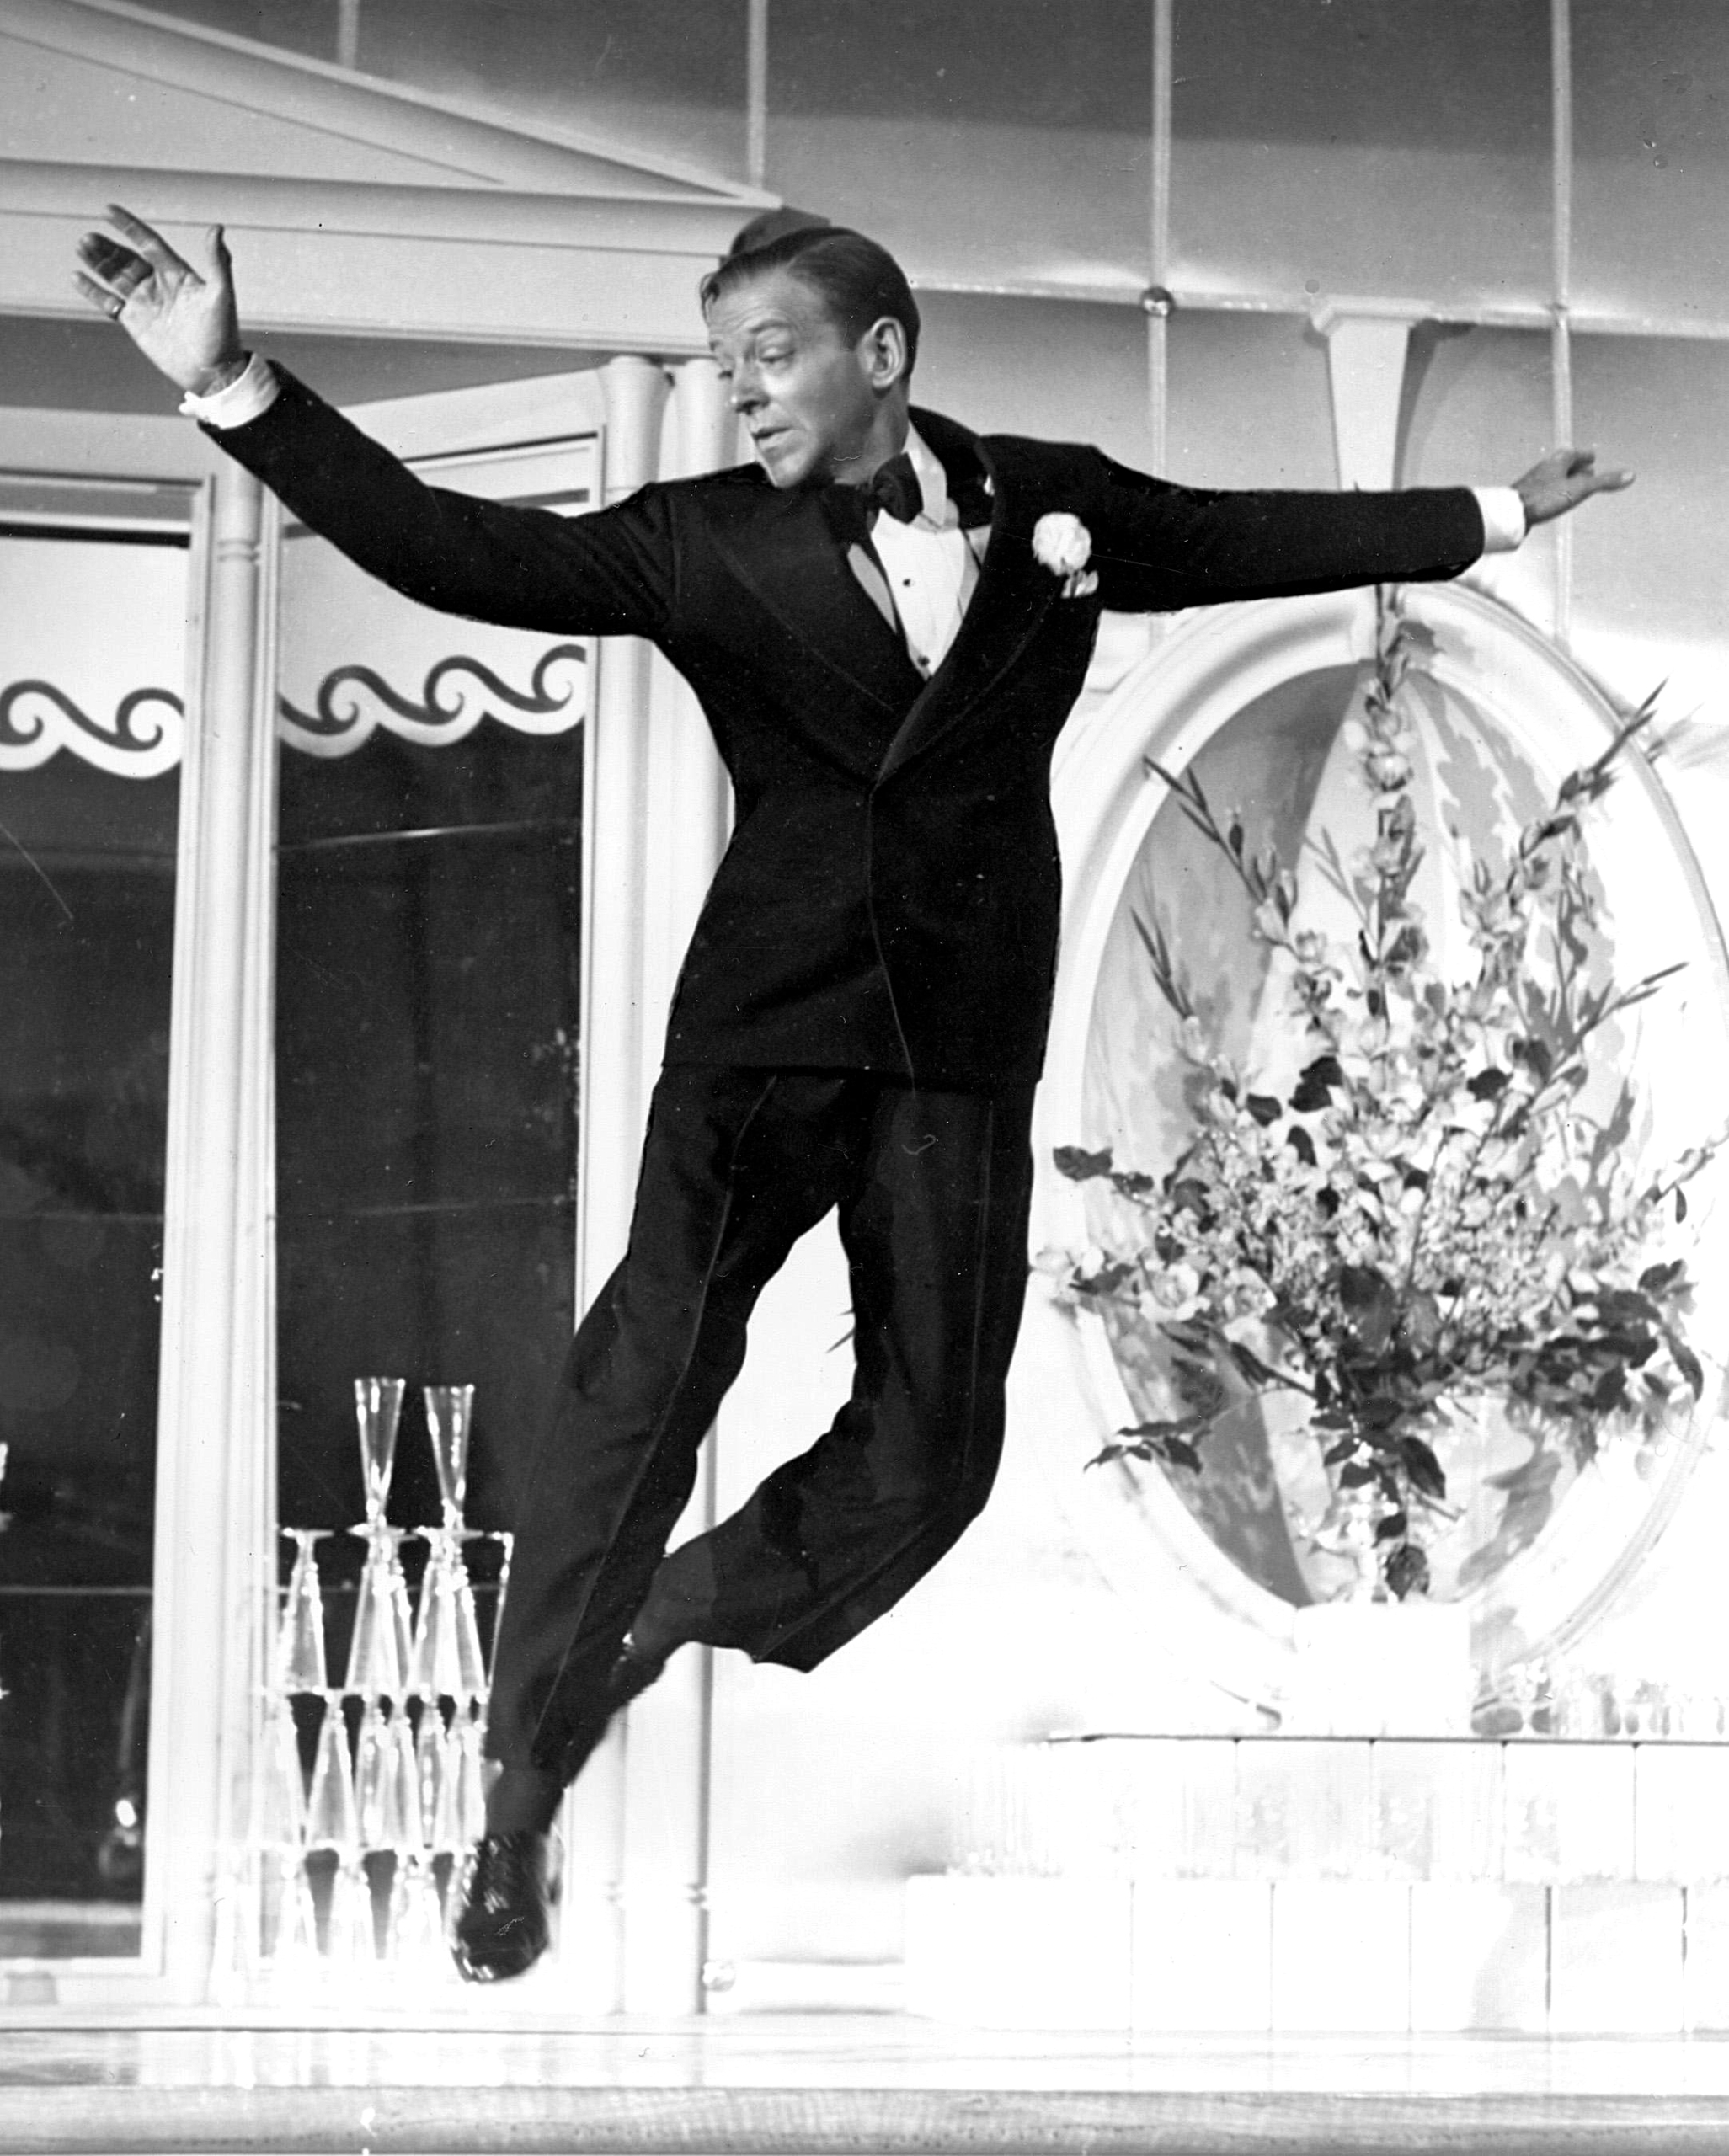 Nghệ sĩ Fred Astaire khiêu vũ thoải mái trong trang phục black tie, trong bộ phim “The Sky's the Limit” năm 1943. (Ảnh: MovieStillsDB)